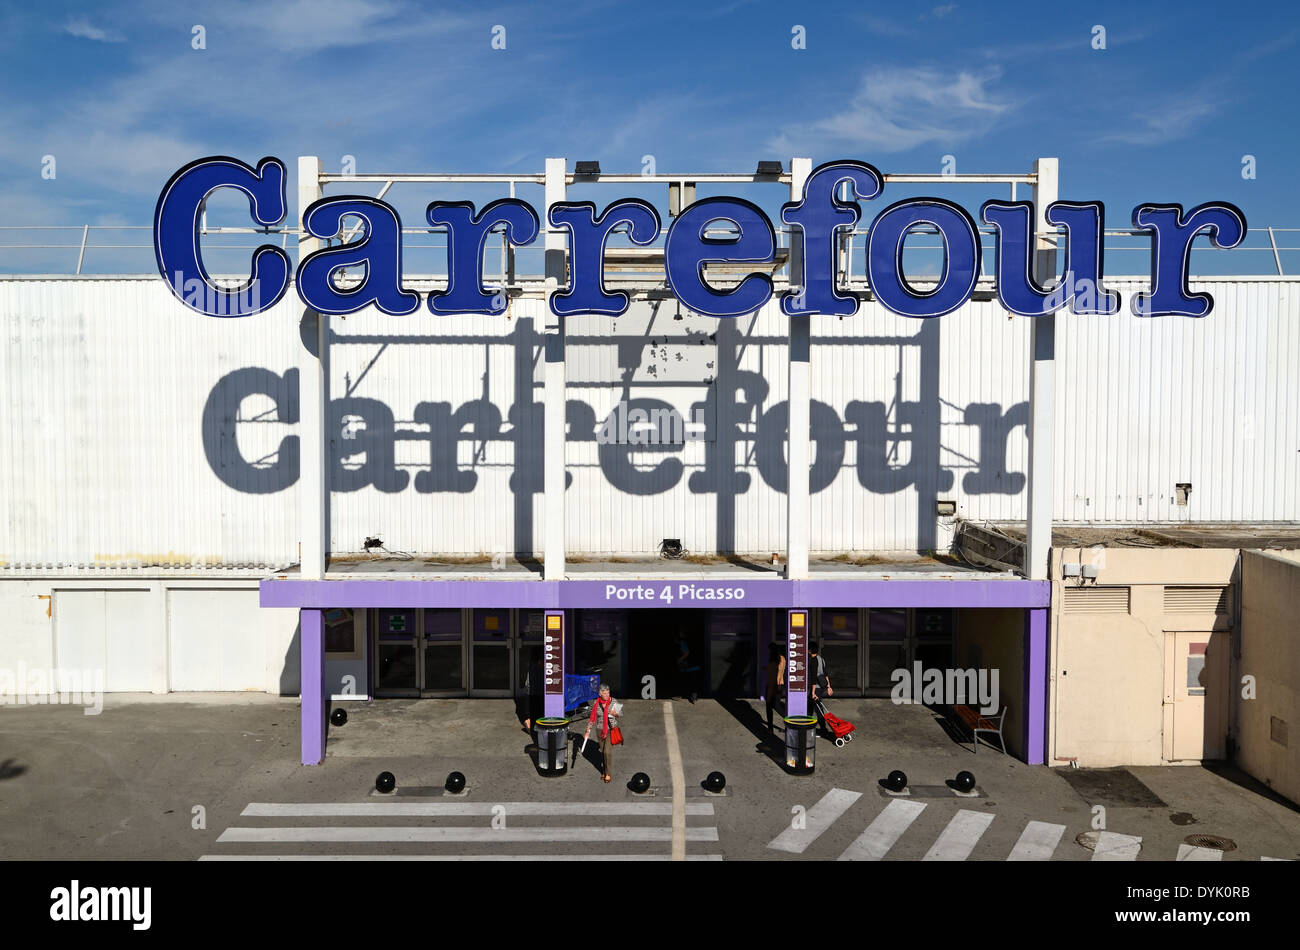 Carrefour supermarket immagini e fotografie stock ad alta risoluzione -  Alamy